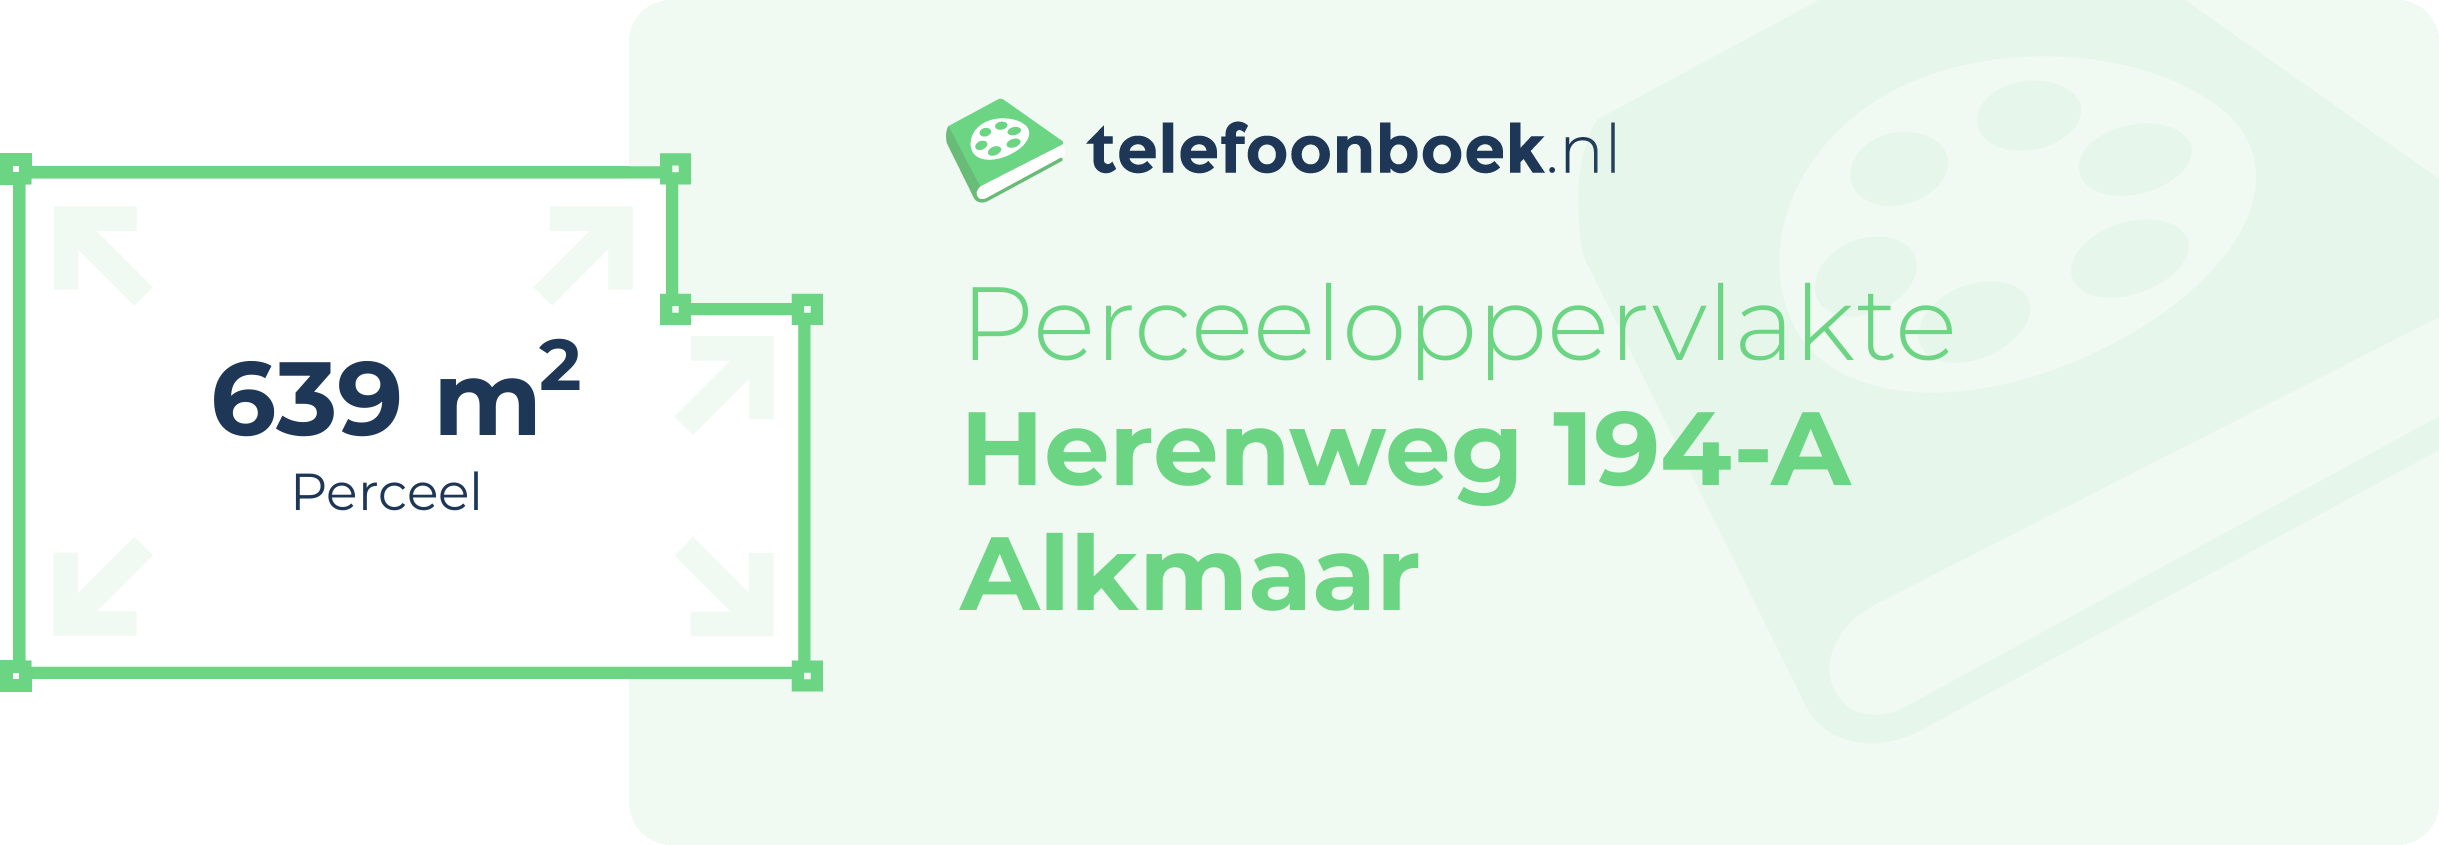 Perceeloppervlakte Herenweg 194-A Alkmaar